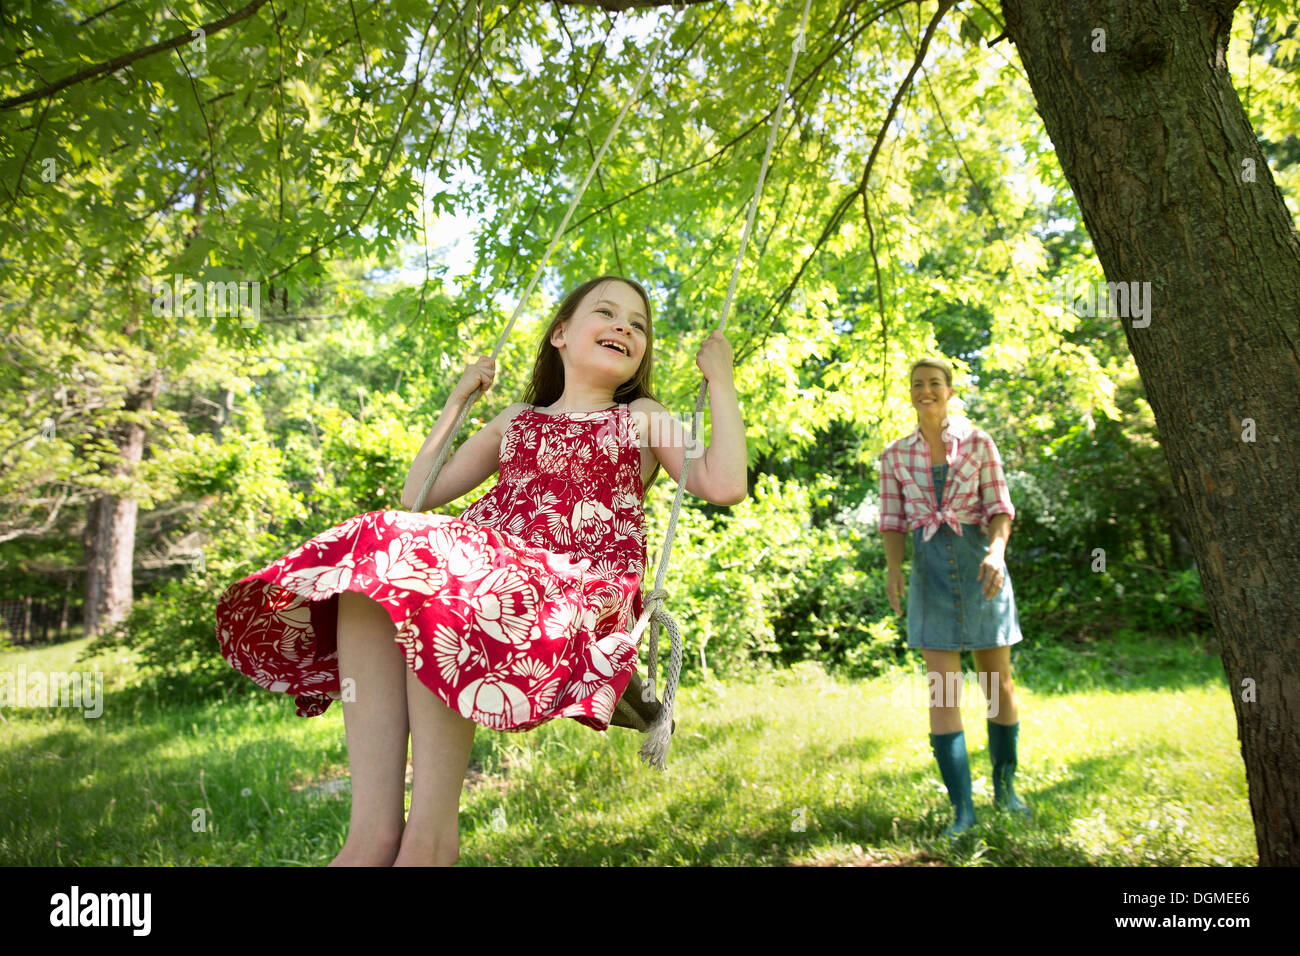 L'été. Une fille dans une robe d'été sur une balançoire sous un arbre feuillu. Une femme debout derrière elle. Banque D'Images